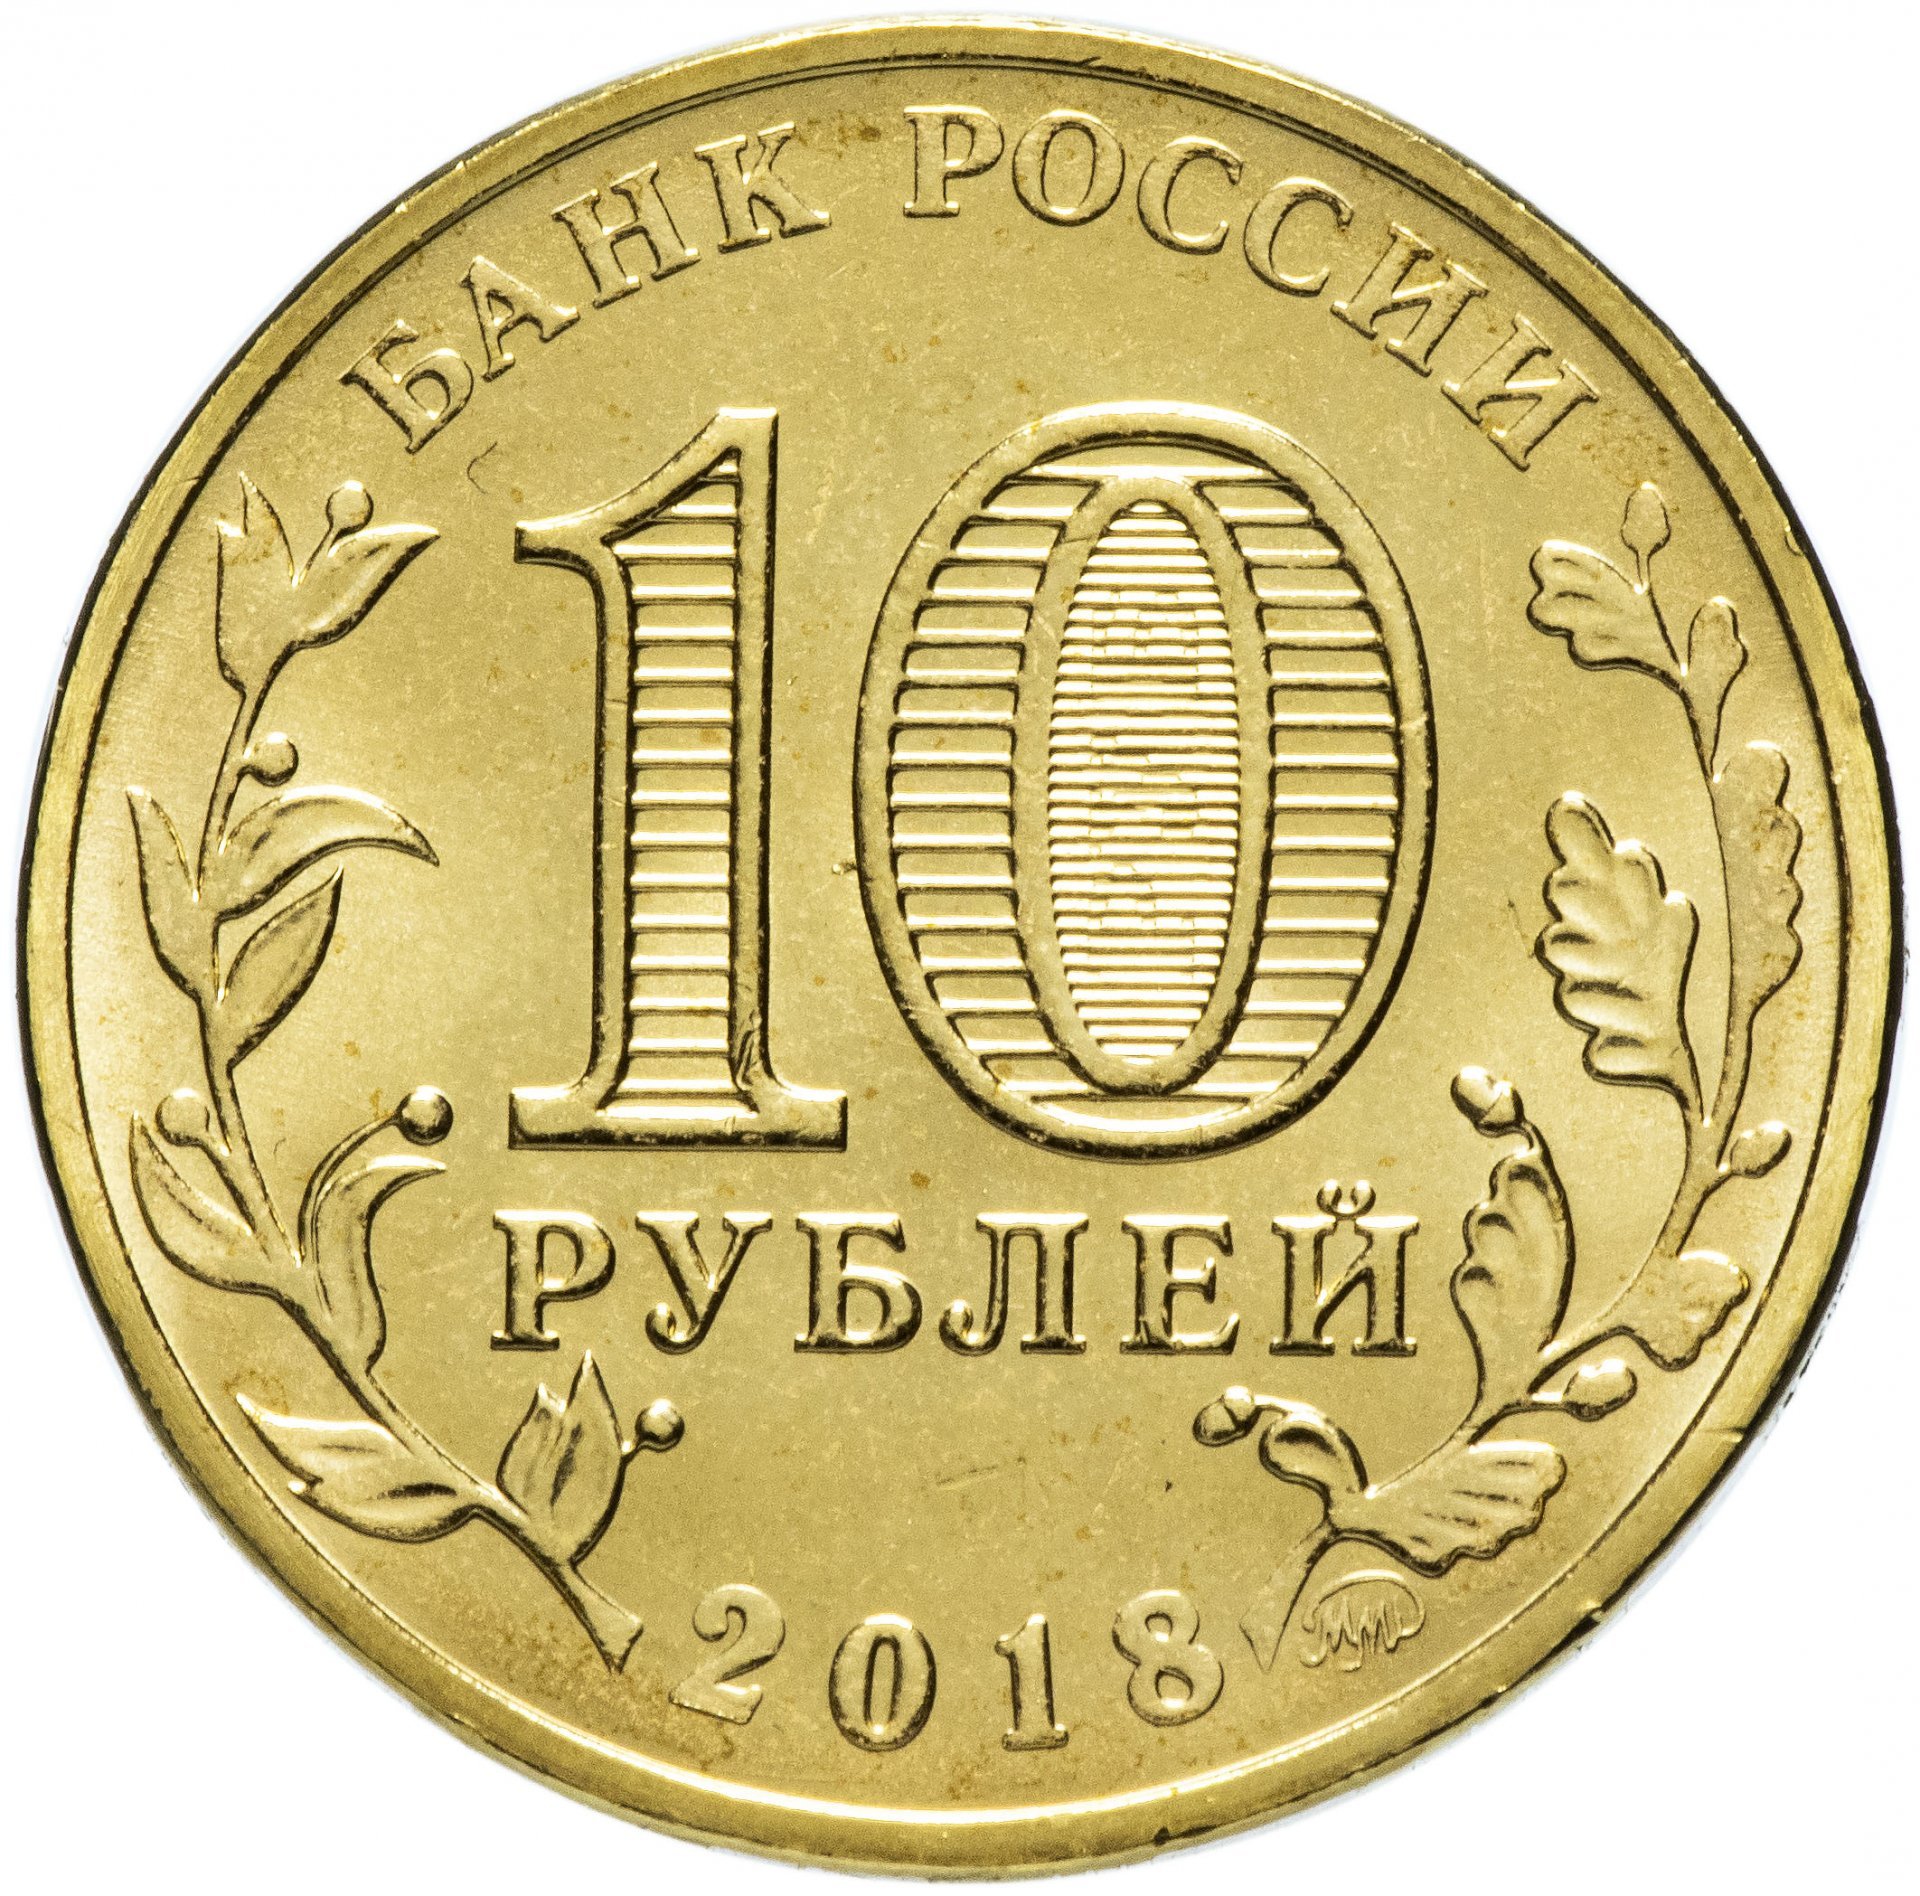 Сколько метров в 10 рублей